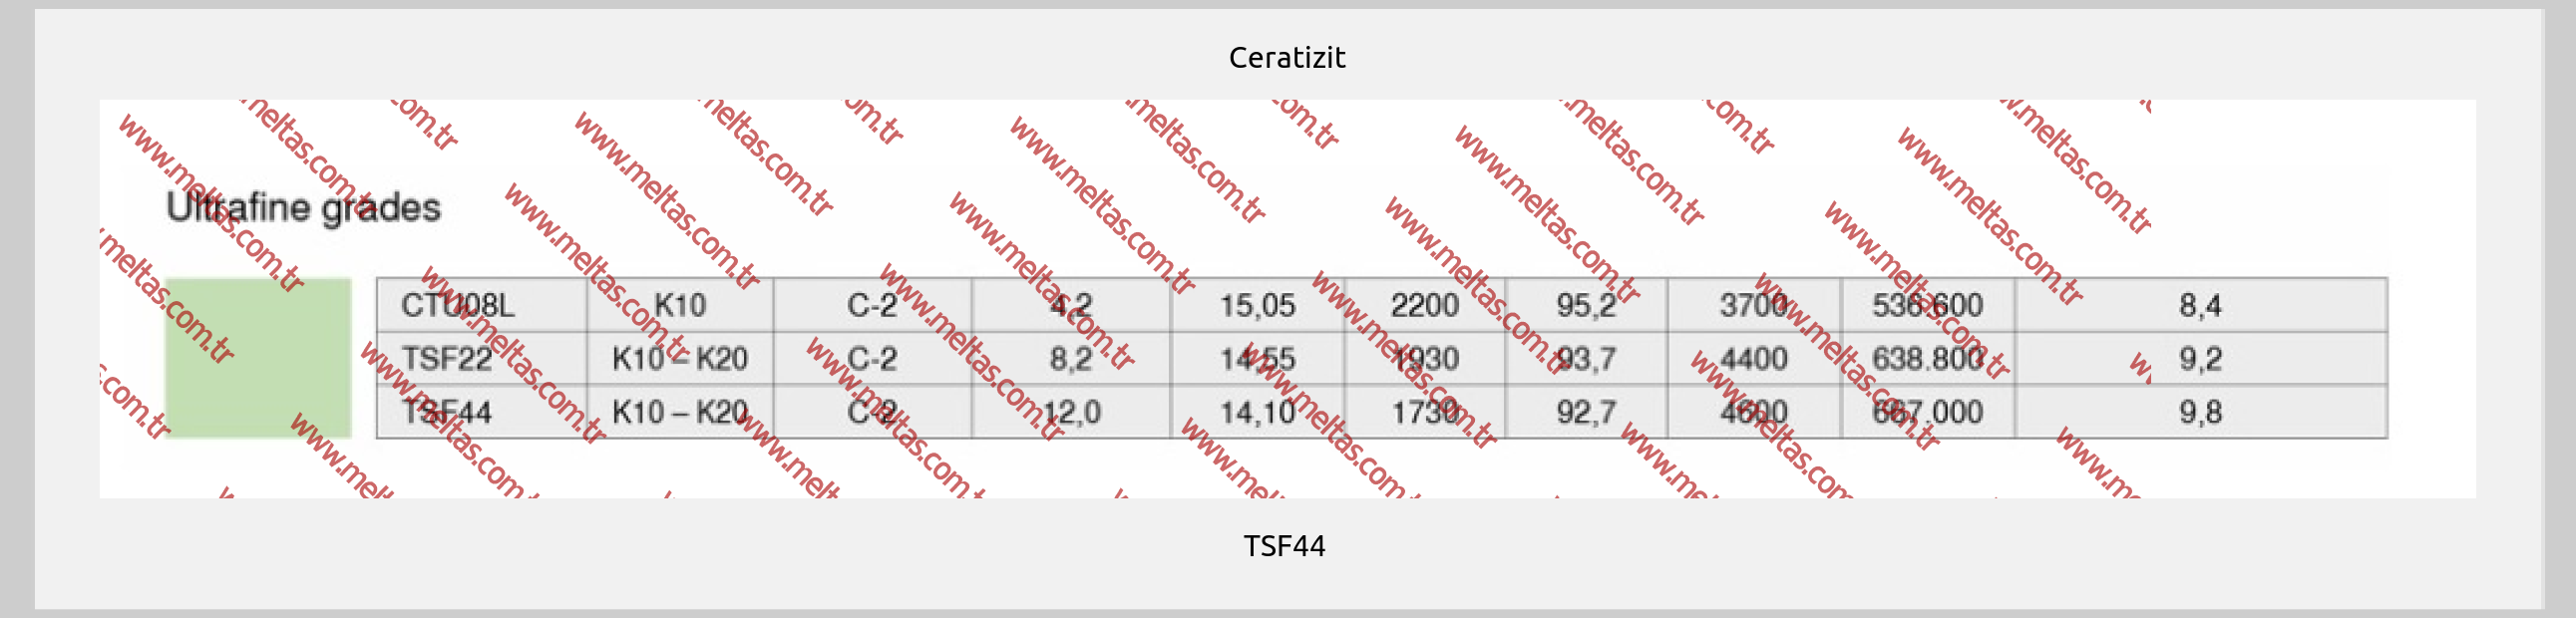 Ceratizit-TSF44 